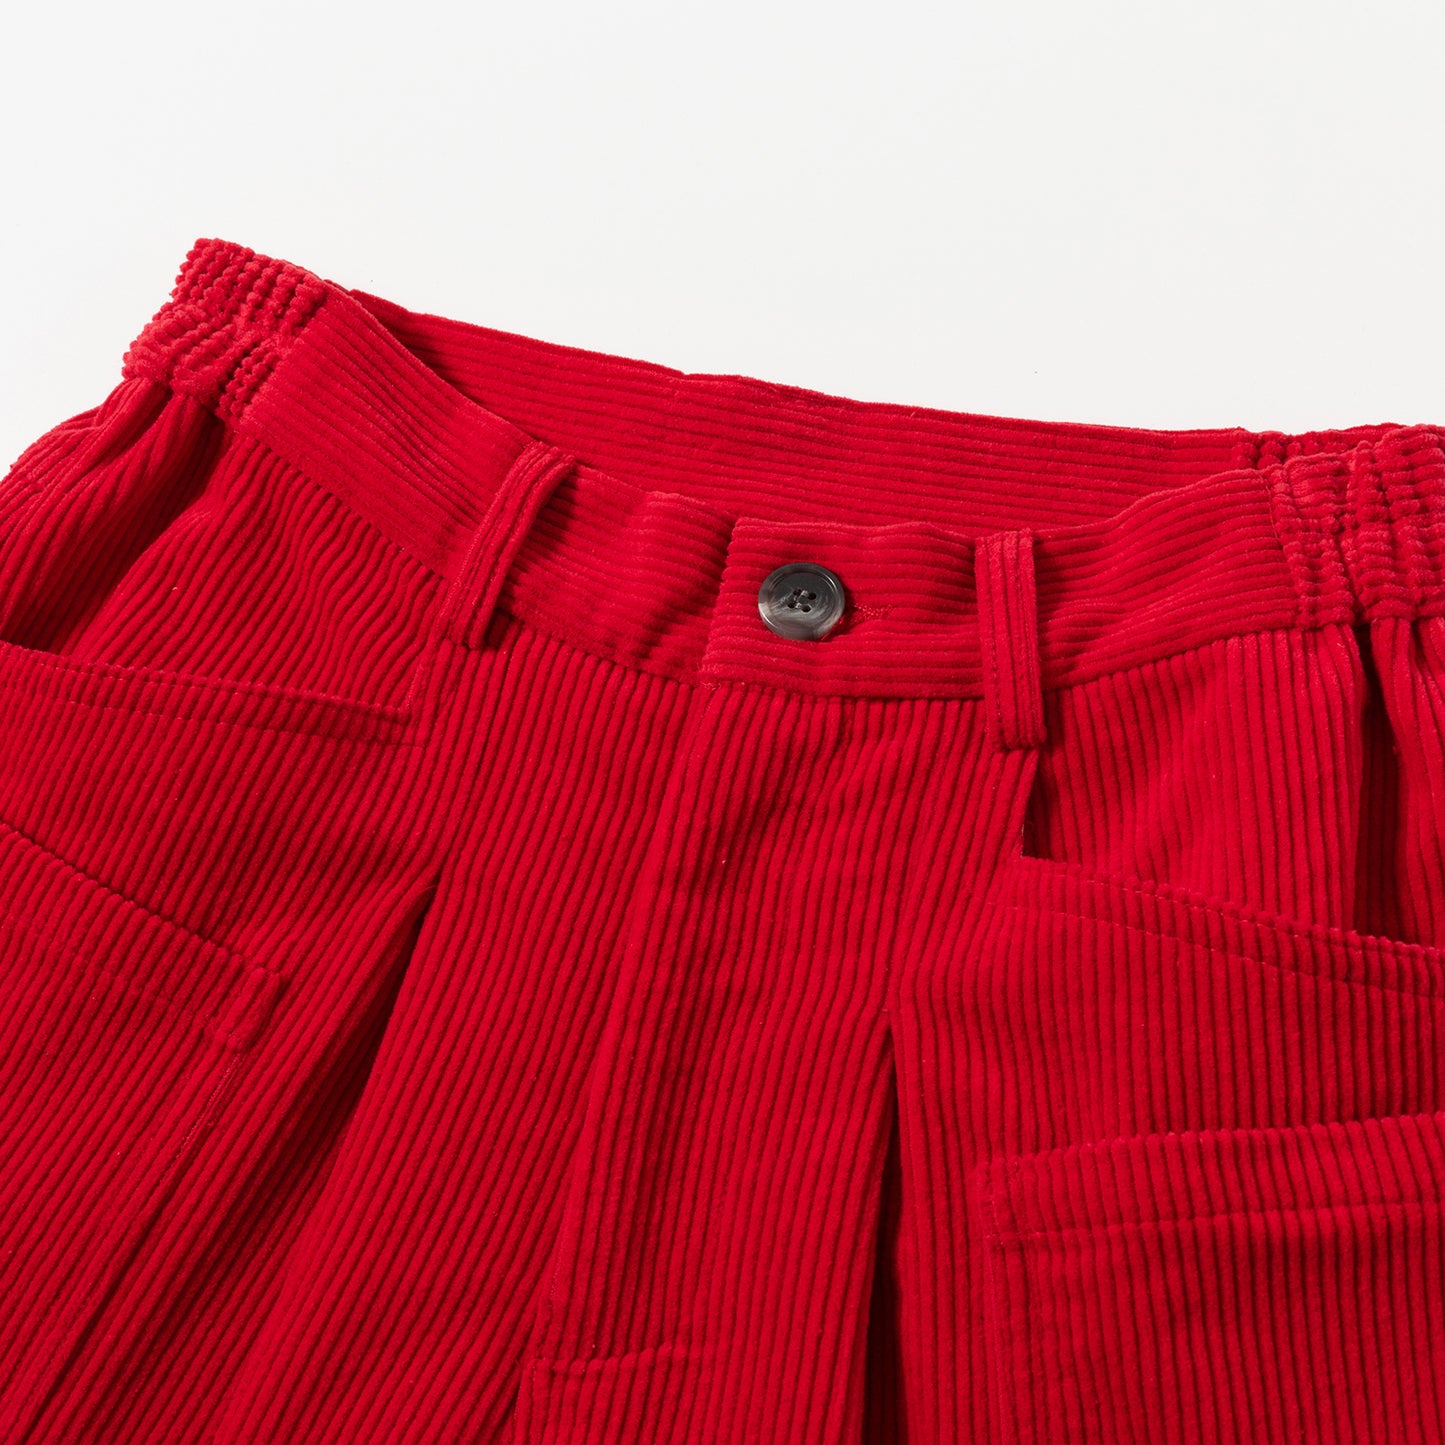 Shorts Velvet, red